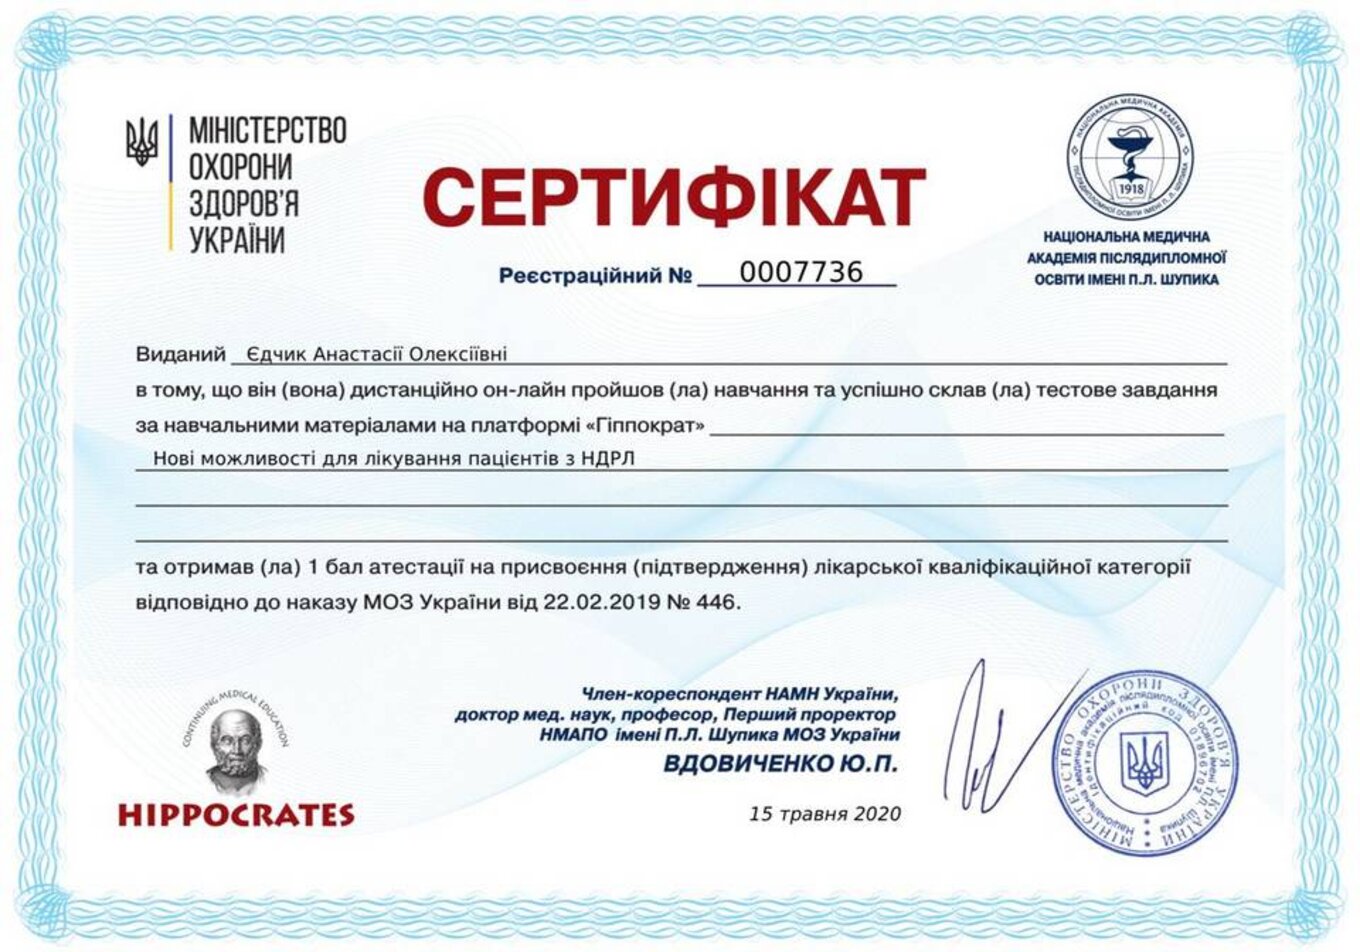 certificates/yedchik-anastasiya-oleksiyivna/erc-edchik-cert-14.jpg